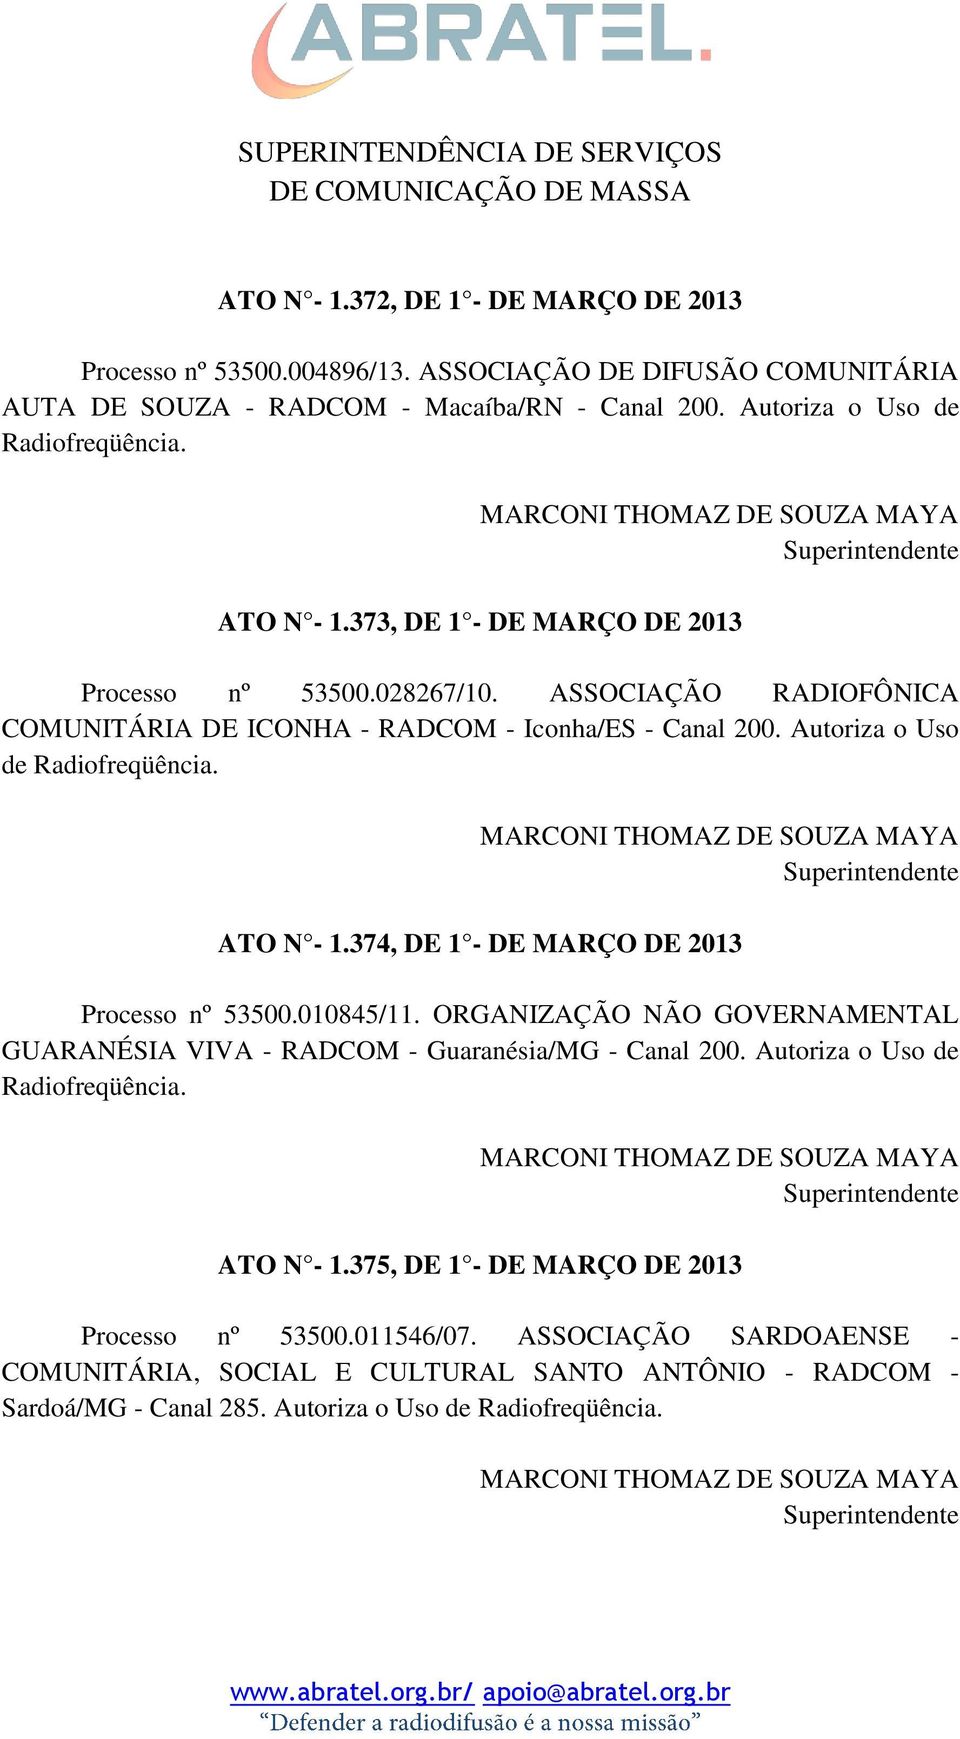 ASSOCIAÇÃO RADIOFÔNICA COMUNITÁRIA DE ICONHA - RADCOM - Iconha/ES - Canal 200. Autoriza o Uso de Radiofreqüência. ATO N - 1.374, DE 1 - DE MARÇO DE 2013 Processo nº 53500.010845/11.